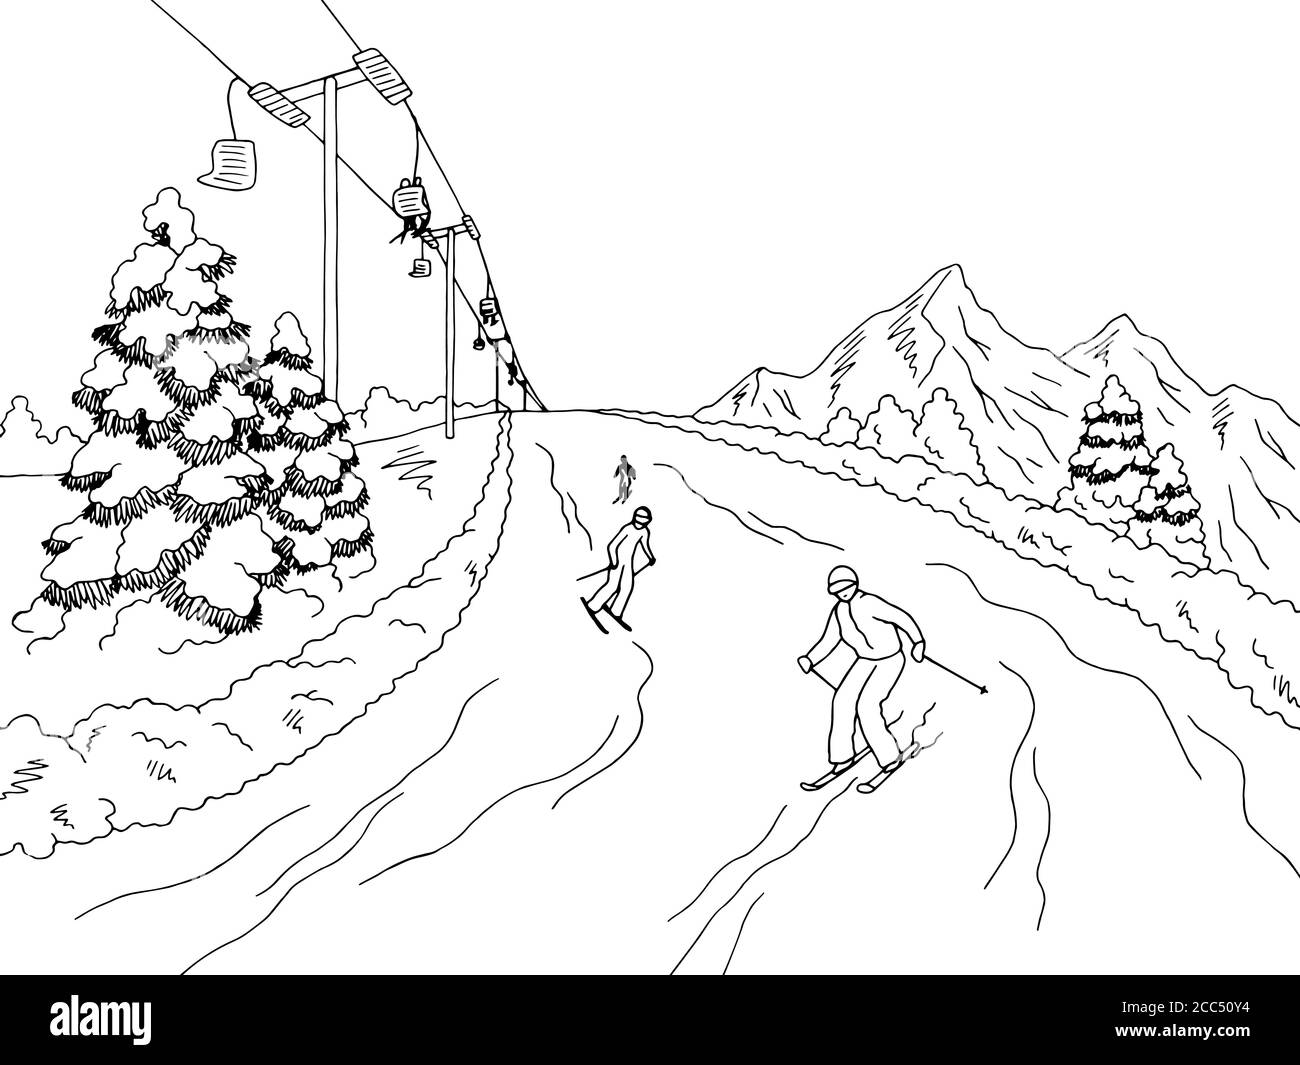 Menschen Skifahren in den Bergen Grafik schwarz weiß Landschaft Skizze Illustrationsvektor Stock Vektor